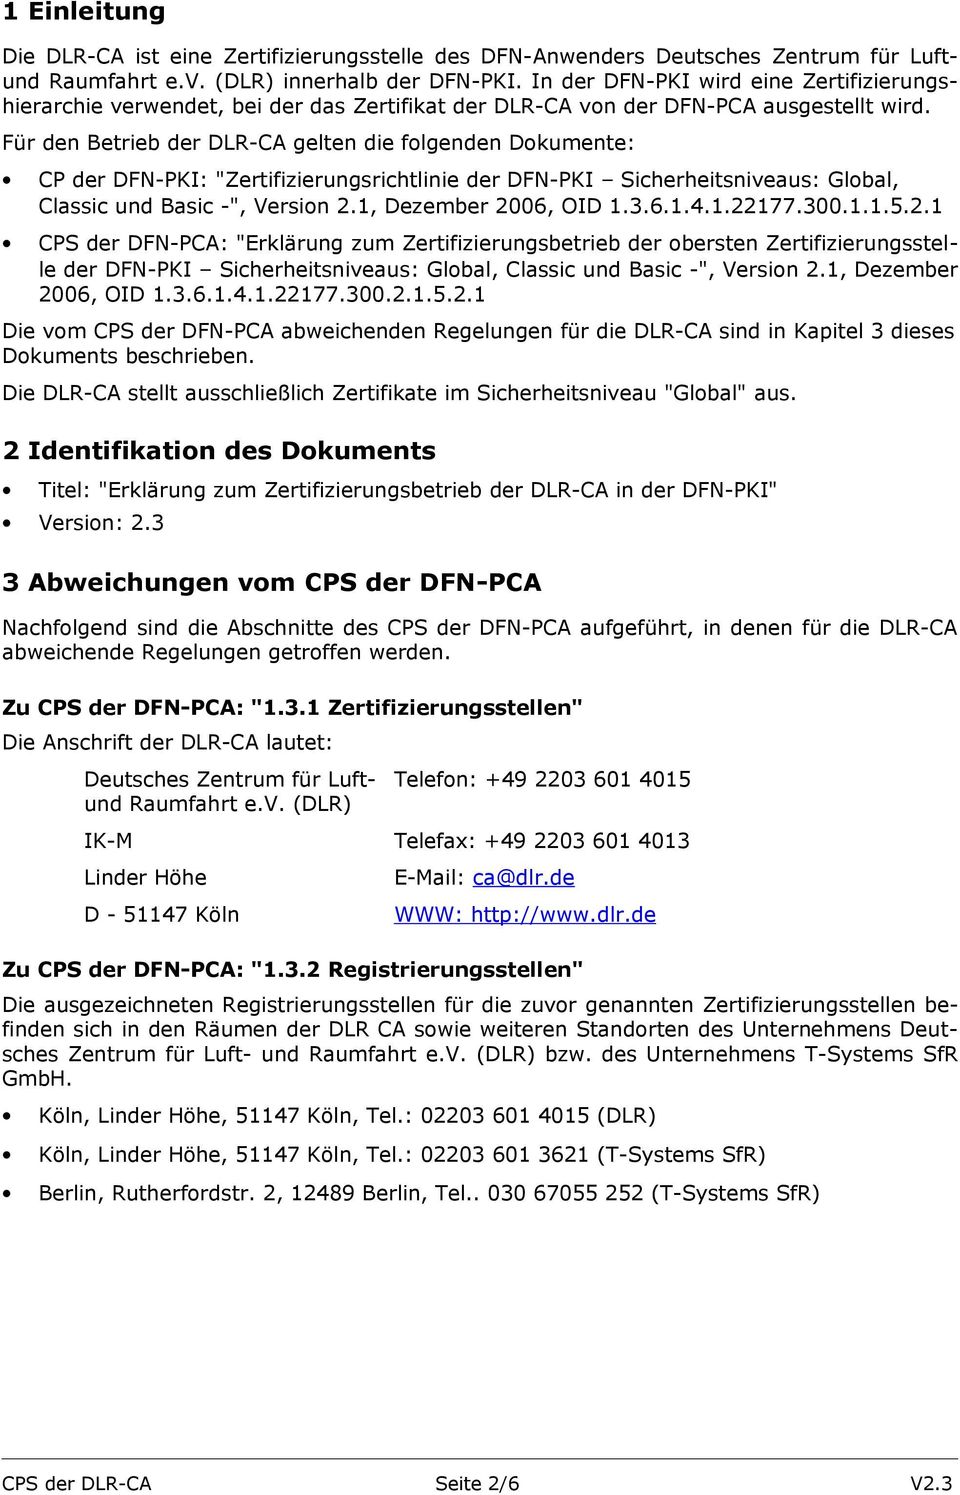 Für den Betrieb der DLR-CA gelten die folgenden Dokumente: CP der DFN-PKI: "Zertifizierungsrichtlinie der DFN-PKI Sicherheitsniveaus: Global, Classic und Basic -", Version 2.1, Dezember 2006, OID 1.3.